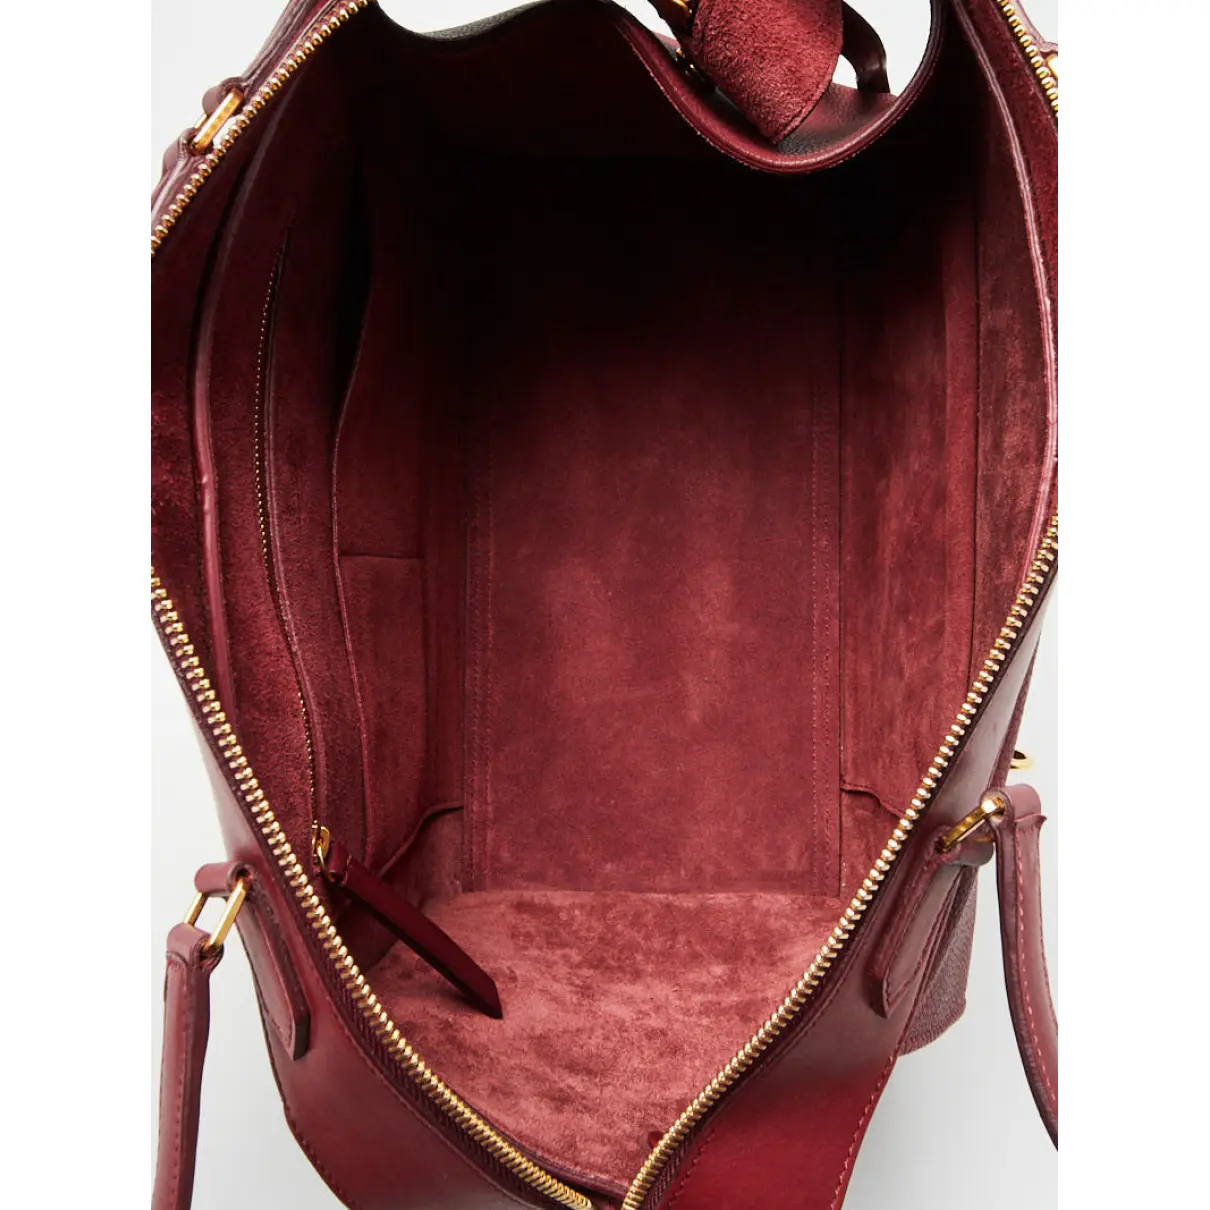 Ring leather handbag Celine